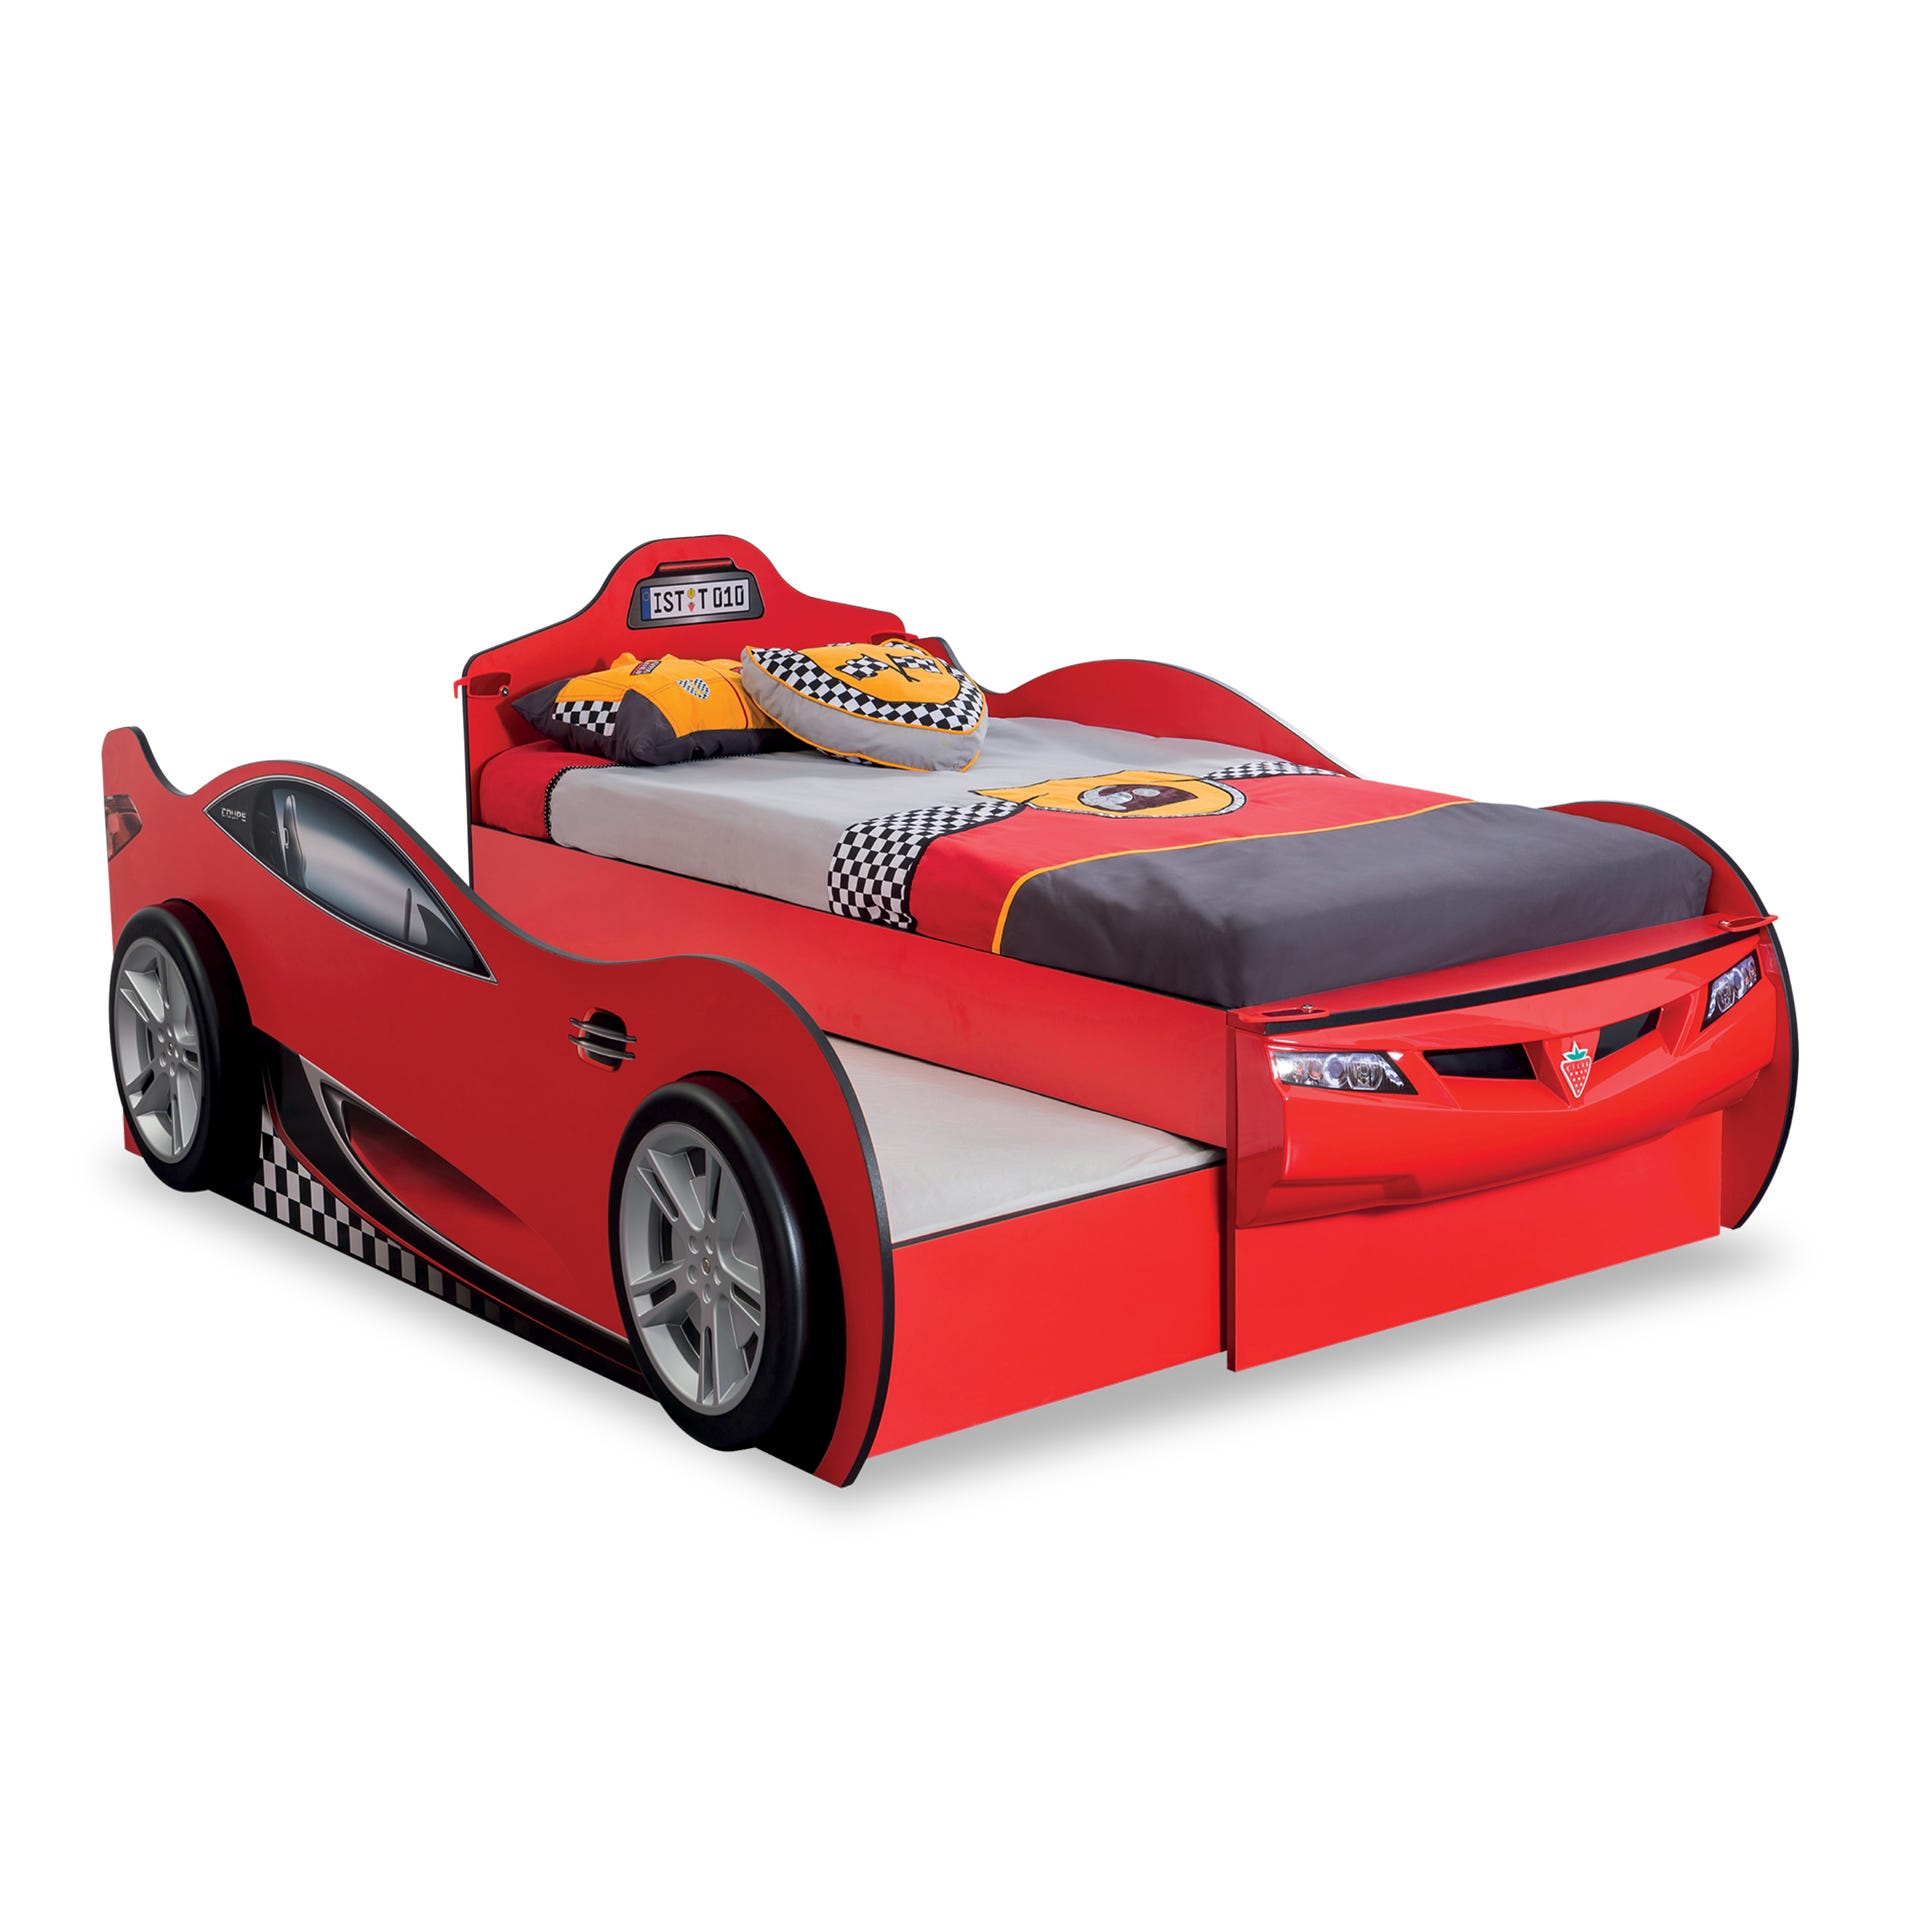 Race Cup Cama Coche Infantil (con cama amiga) (rojo) (90x190 - 90x180 Cm)